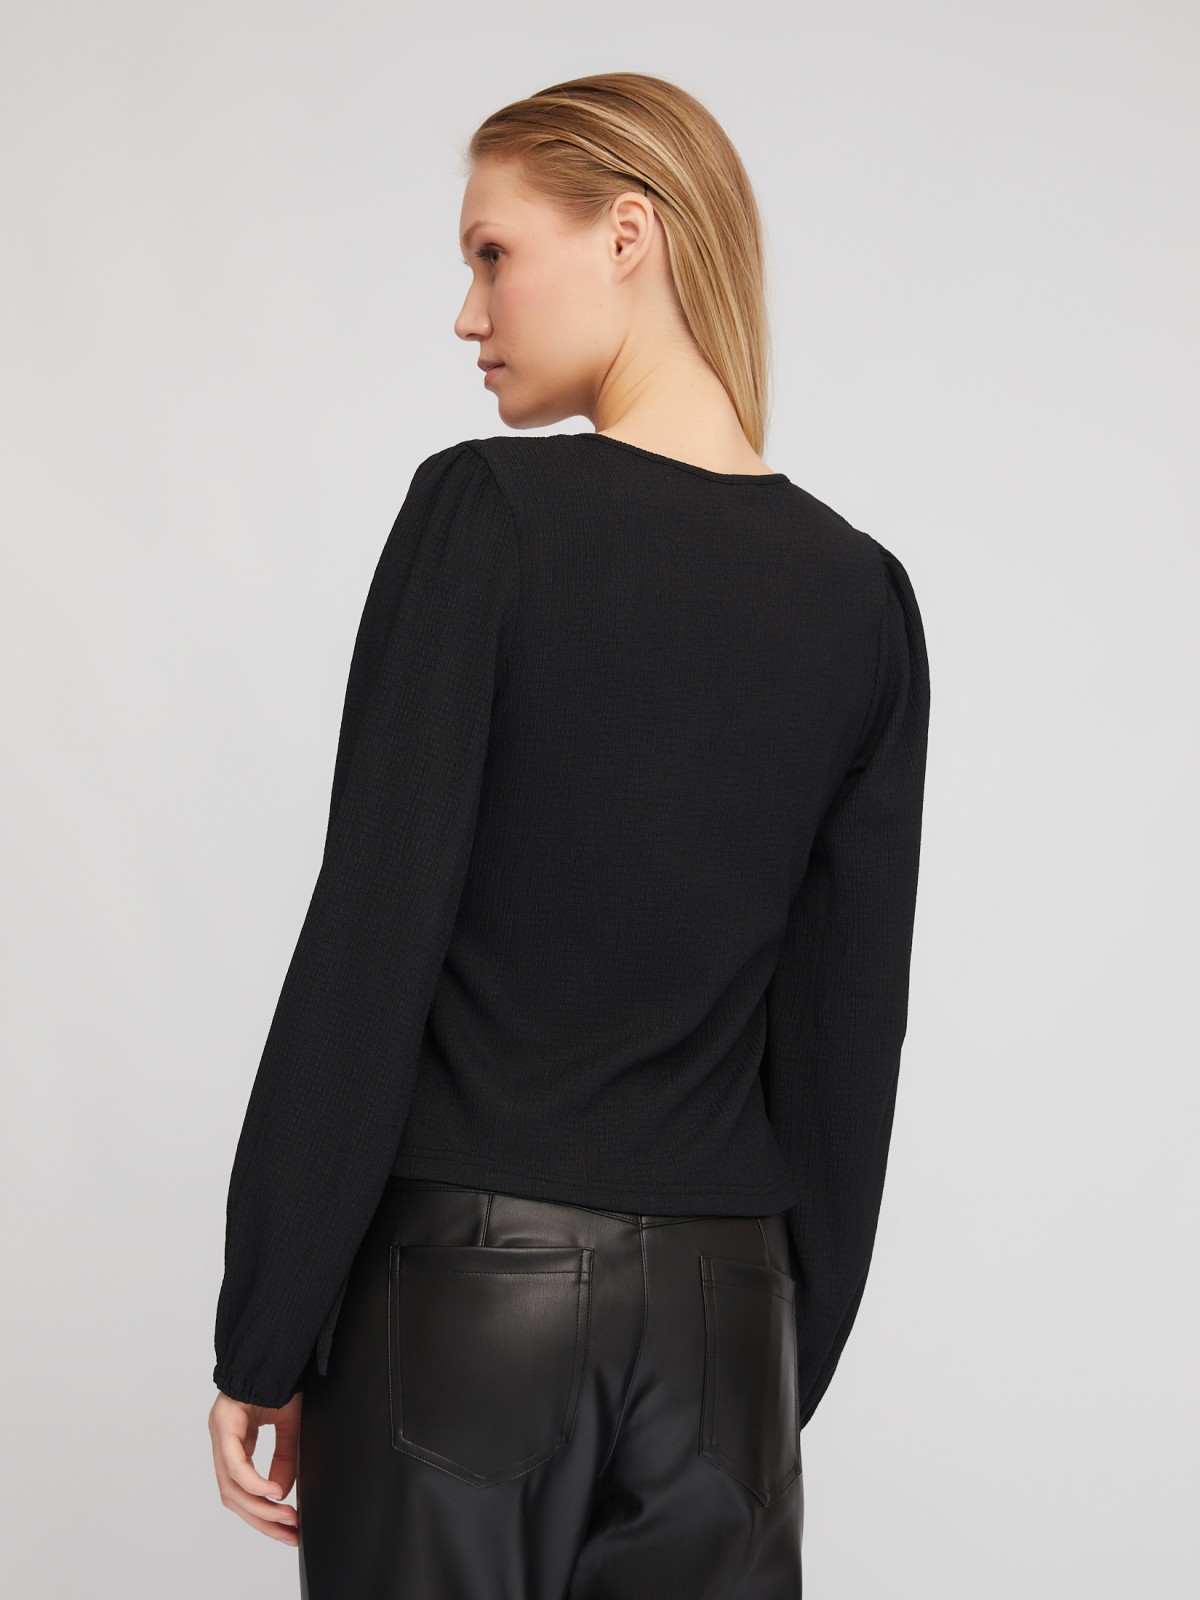 Укороченный топ-блузка на запах с объёмным рукавом zolla 024111162201, цвет черный, размер XS - фото 6